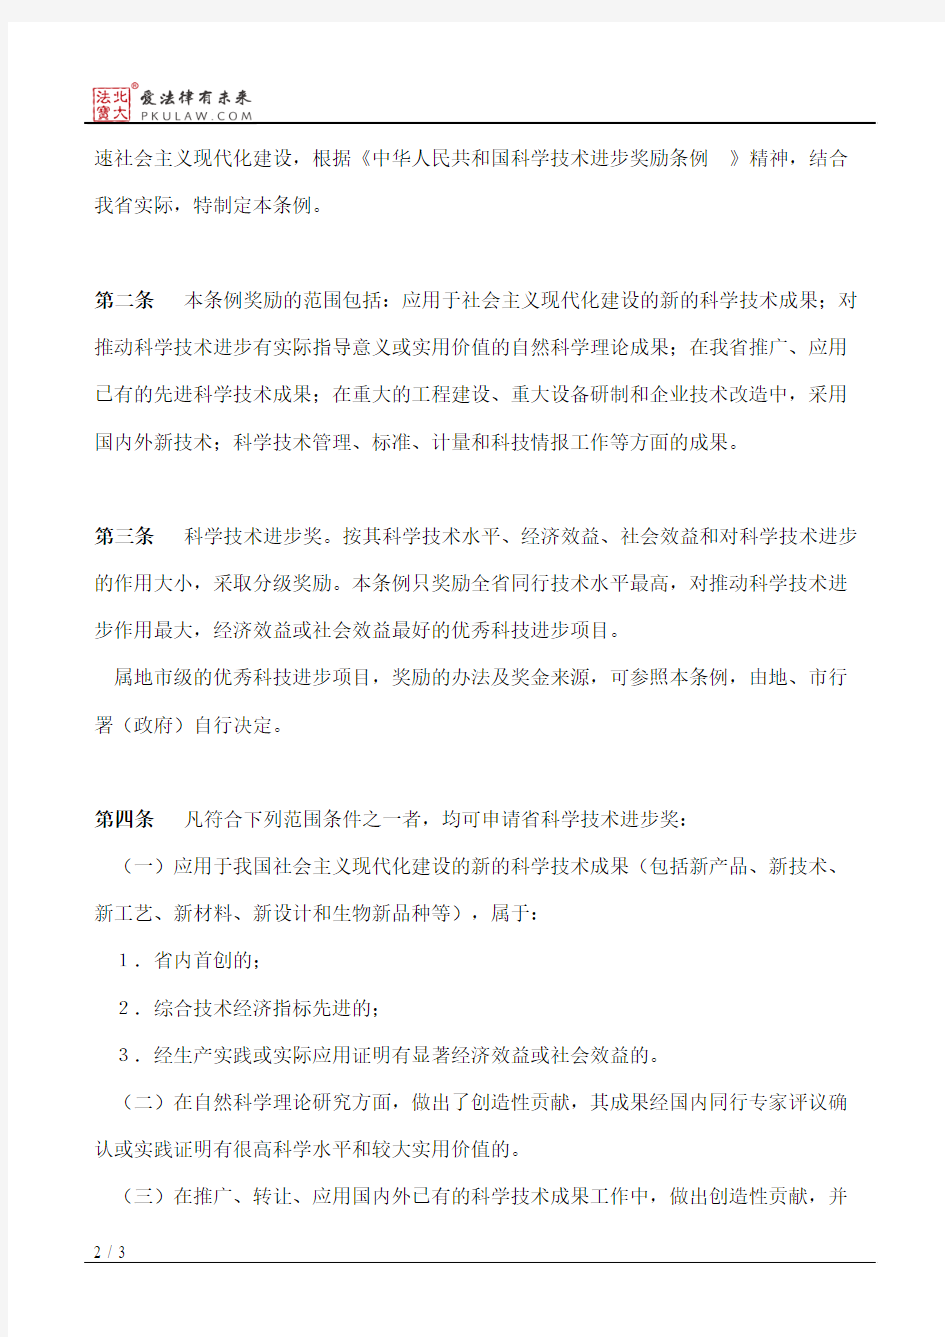 福建省人民政府关于发布《福建省科学技术进步奖励条例》的通知